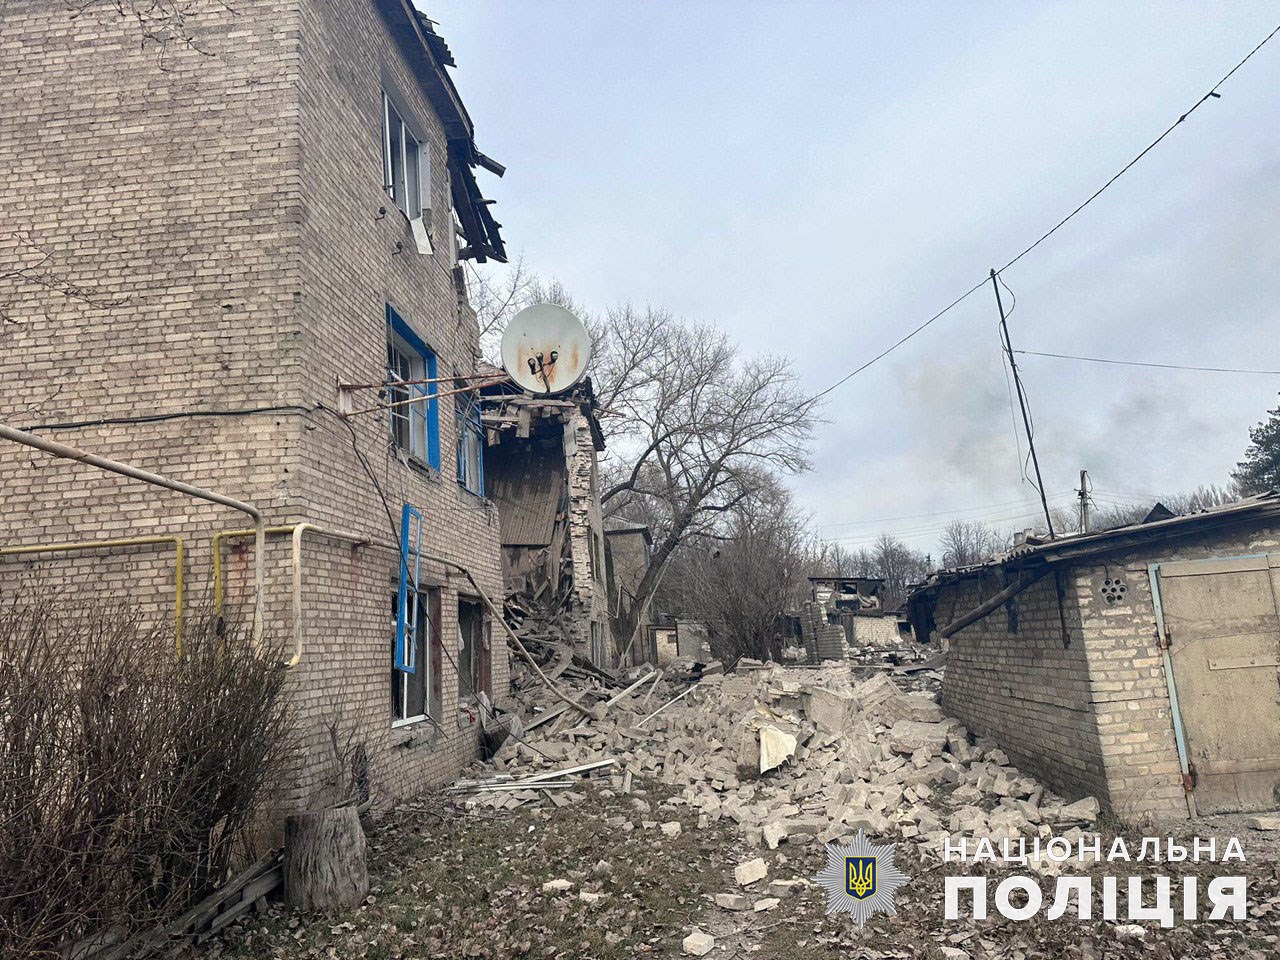 4 жители области погибли и столько же получили ранения: за сутки россияне обстреляли 32 города и села Донетчины 1